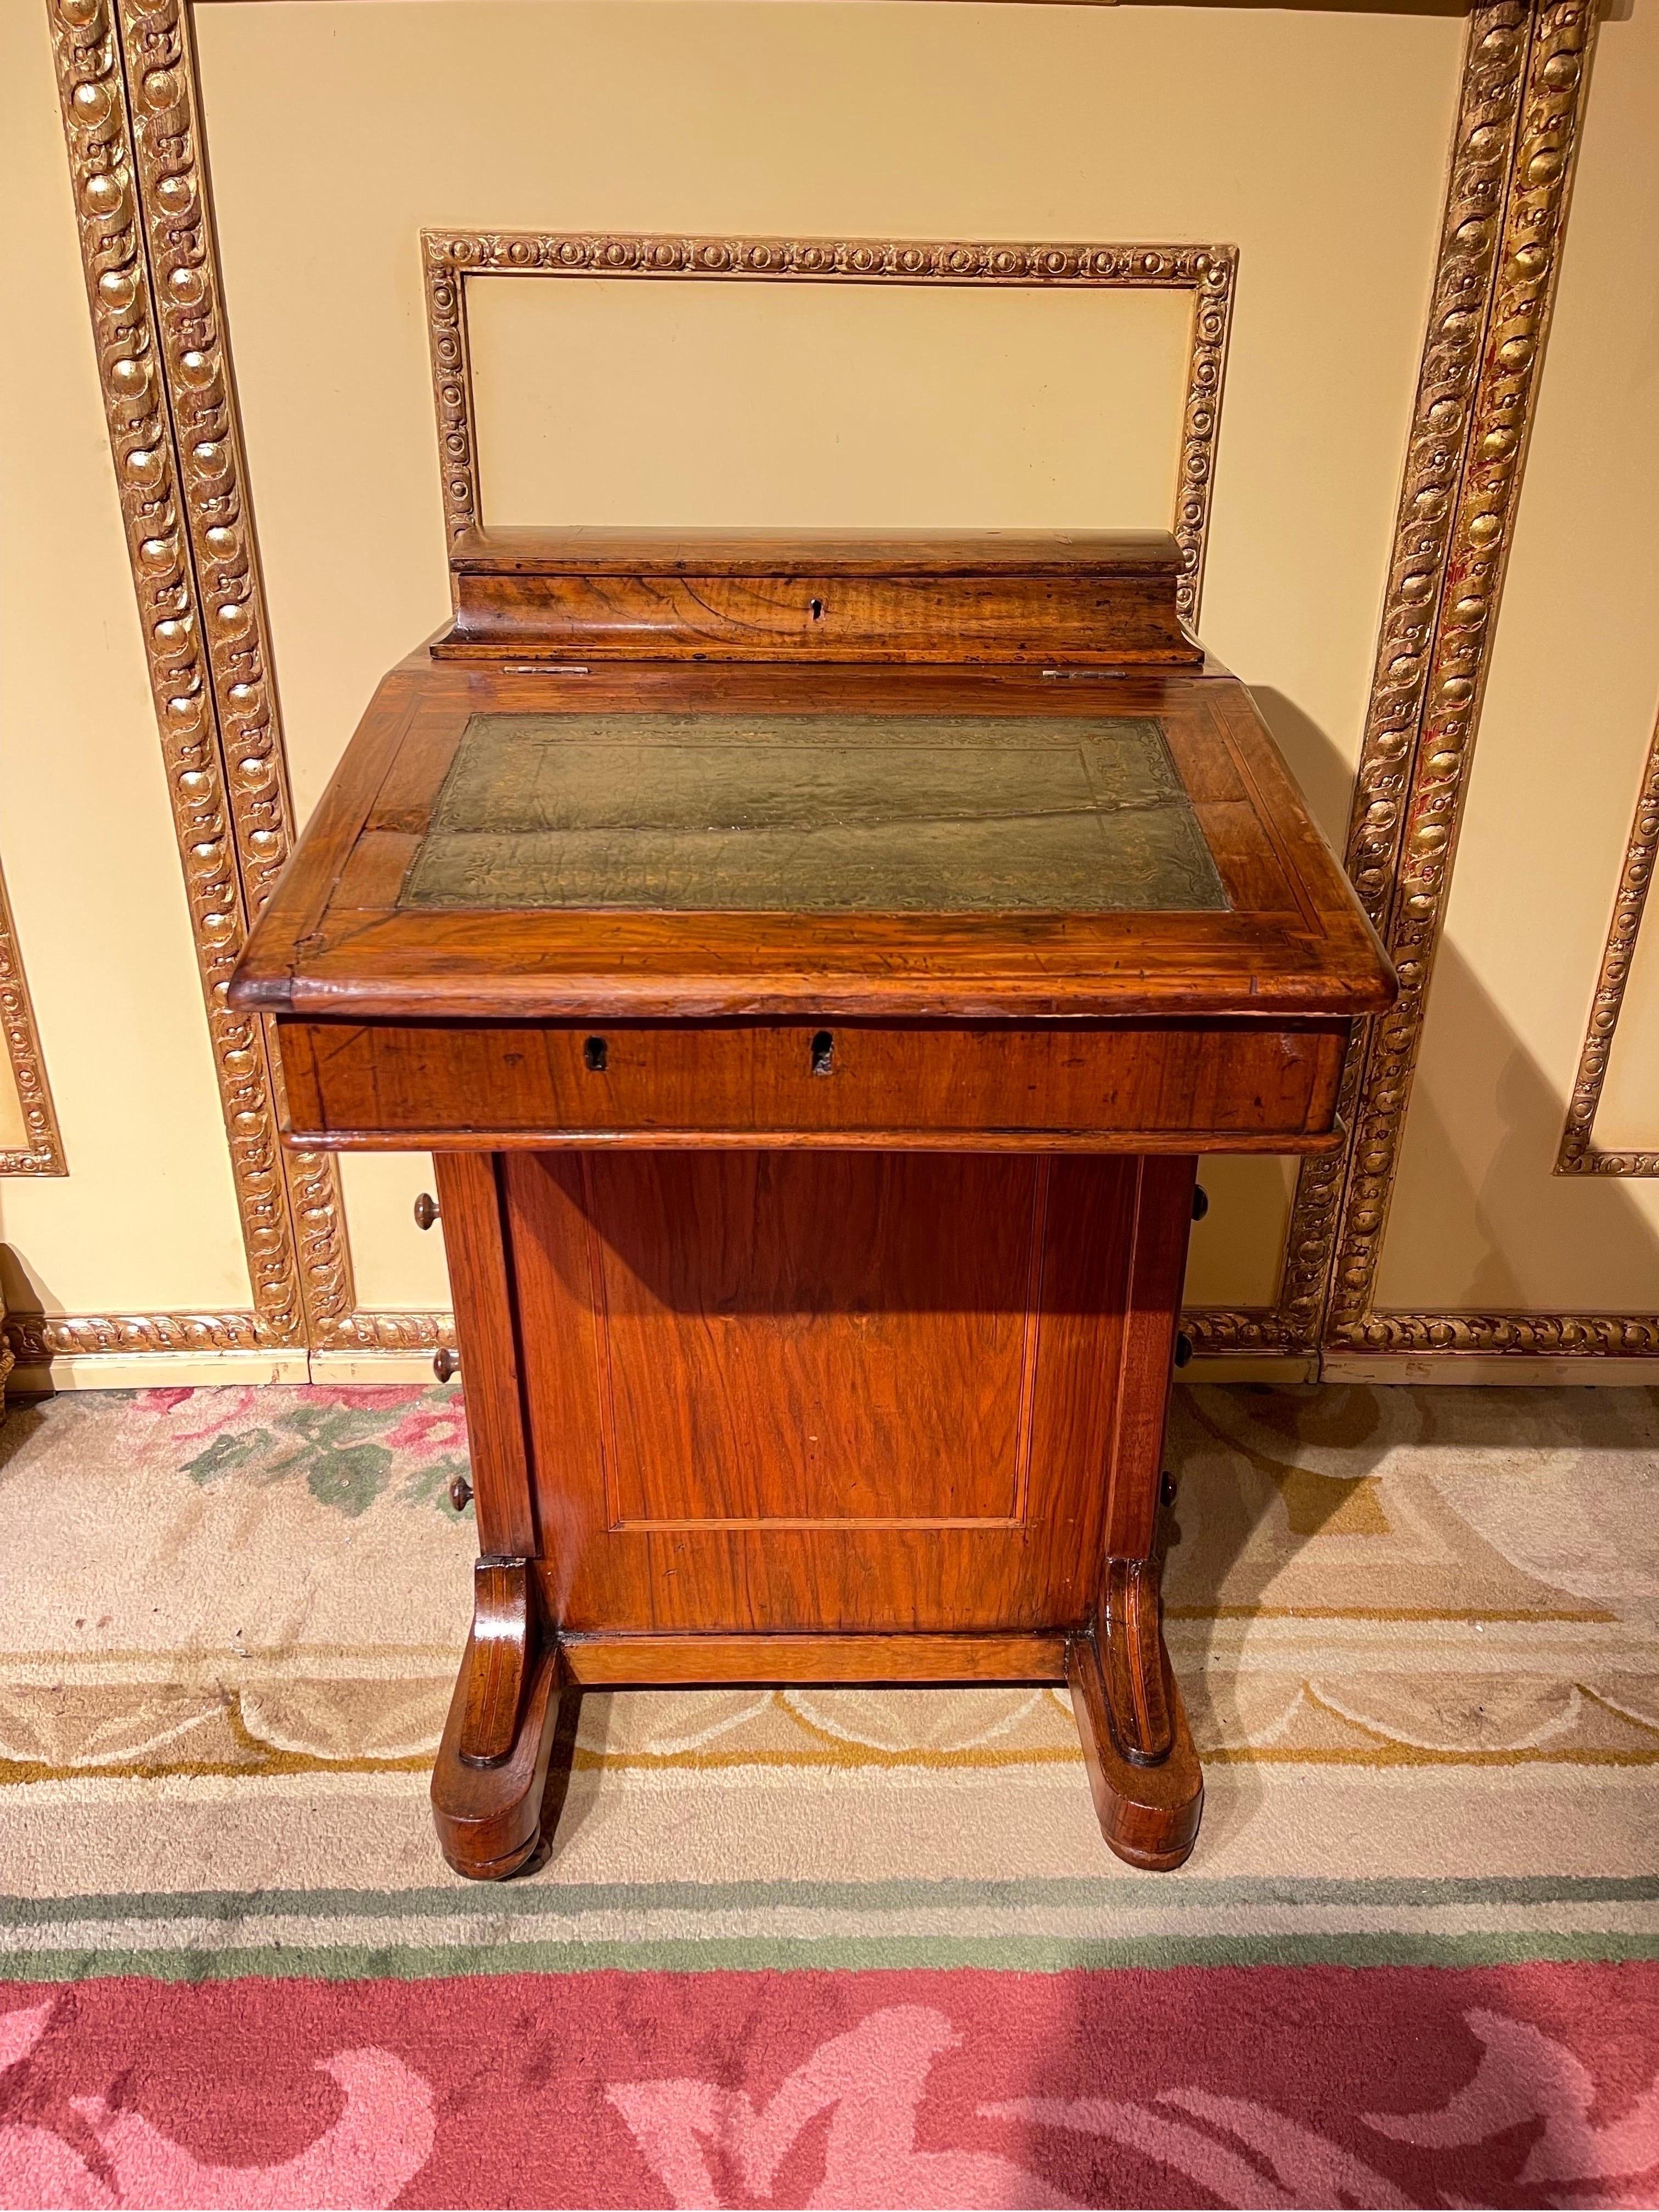 Einzigartiger Mini-Schreibtisch/Damenschreibtisch, England 1890

Schreibtisch für neugierige Damen, England. Faltbare Schreibfläche aus Massivholz.
Mit verschiedenen Schubladen und Fächern für ausreichend Stauraum.